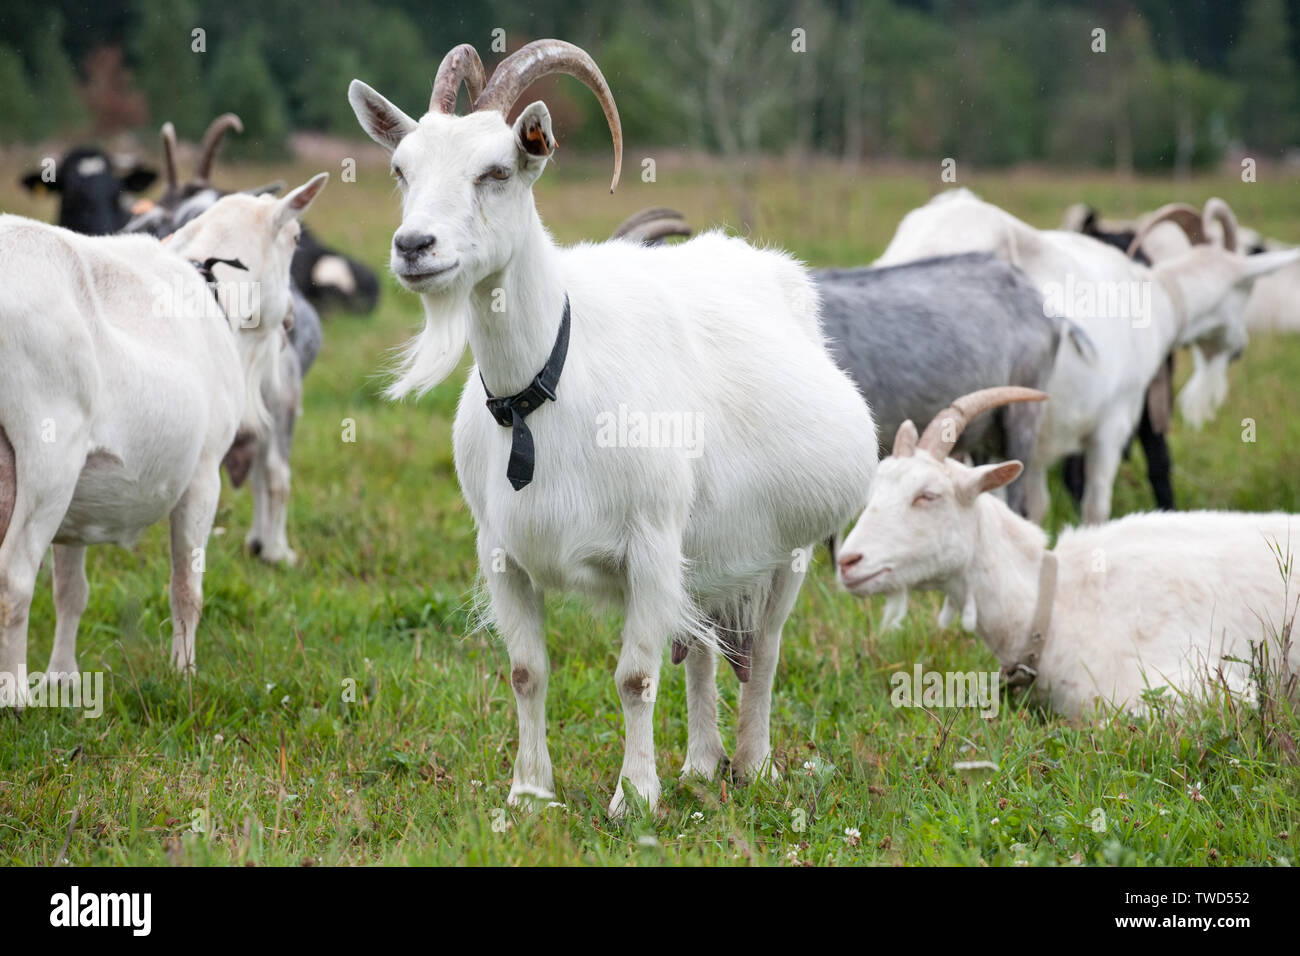 Weiße Ziege stehend auf der Weide outdoor Hintergrund in voller Größe anzeigen Stockfoto